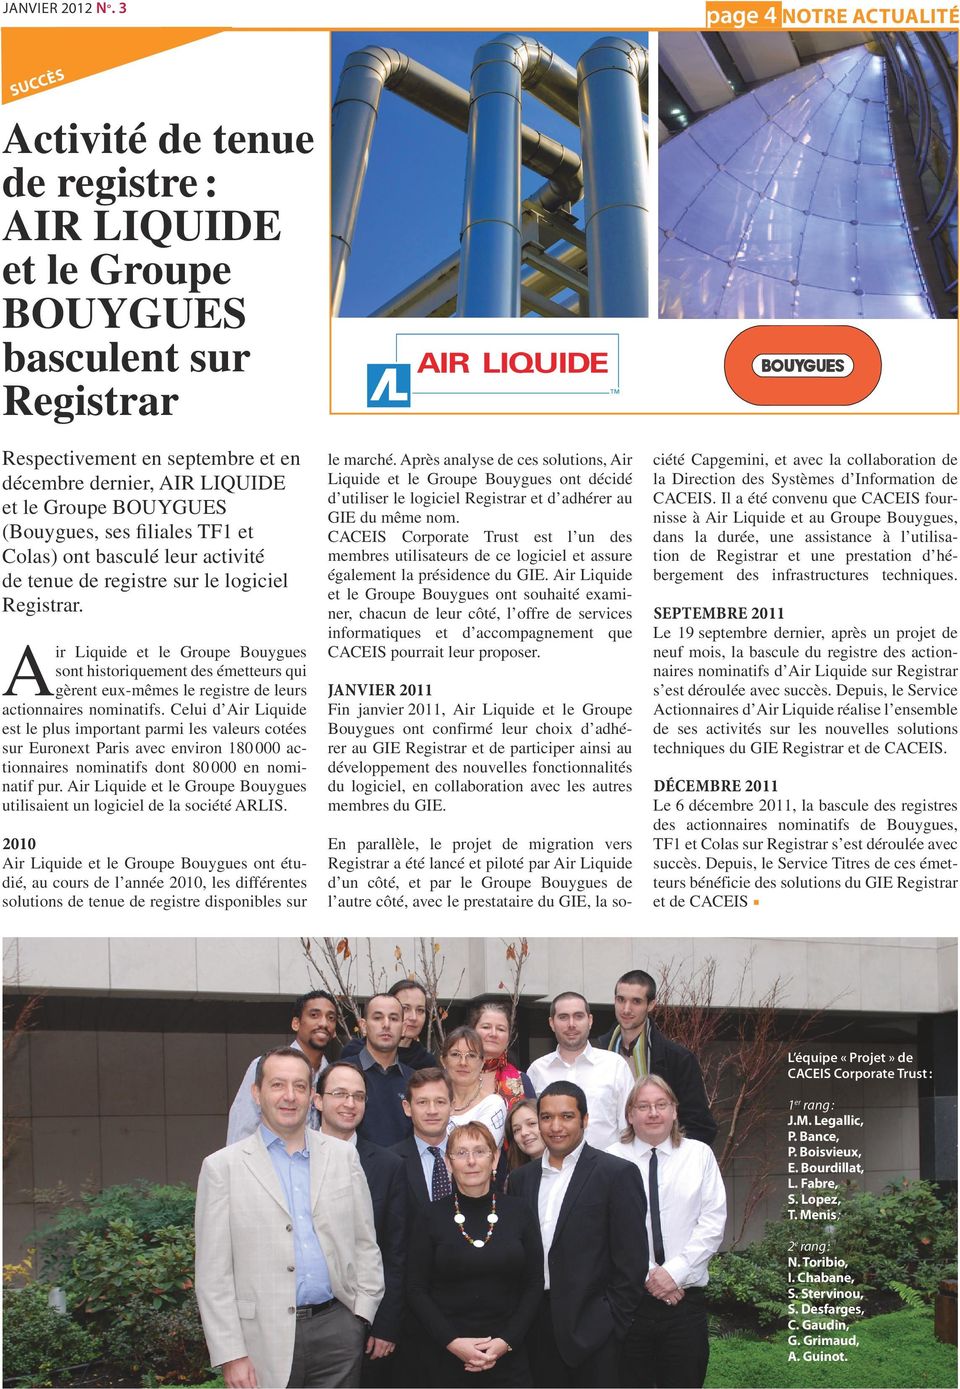 BOUYGUES (Bouygues, ses filiales TF1 et Colas) ont basculé leur activité de tenue de registre sur le logiciel Registrar.